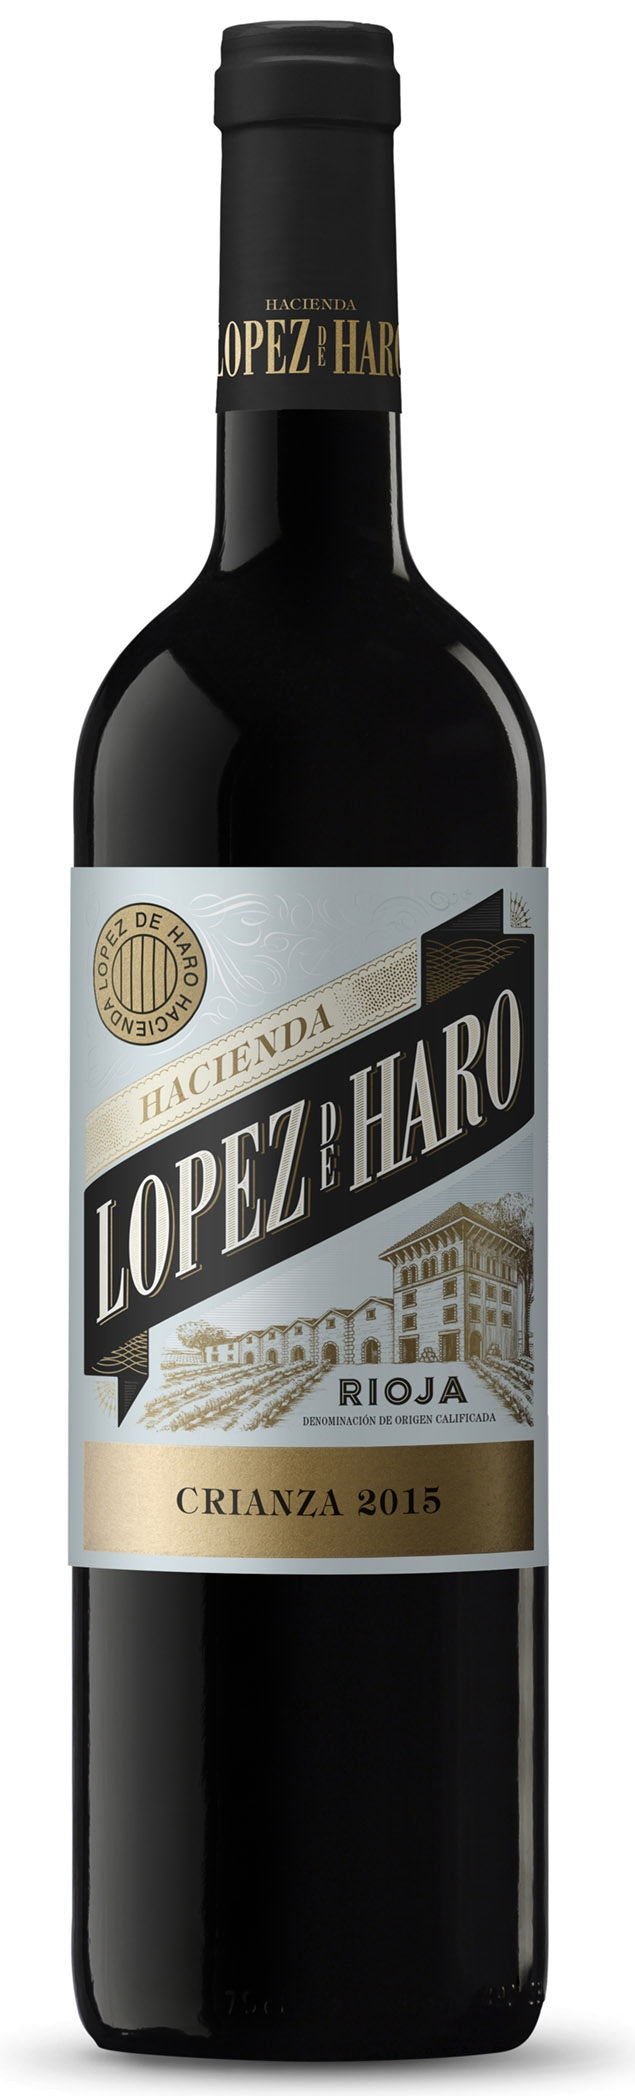 Lopez de Haro Rioja Crianza